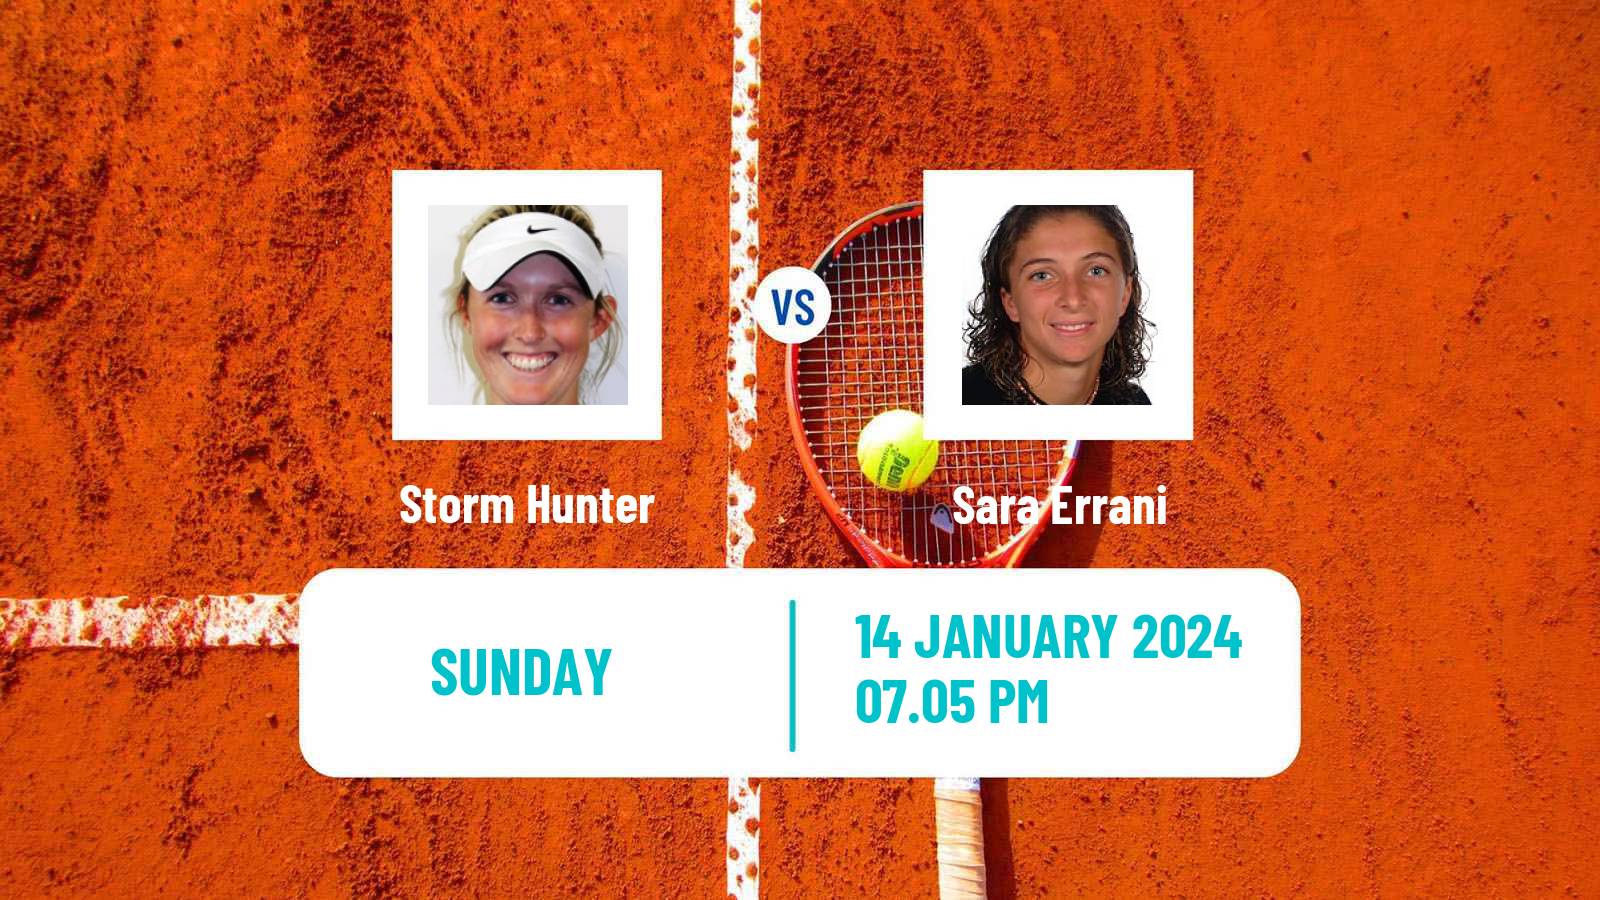 Tennis WTA Australian Open Storm Hunter - Sara Errani